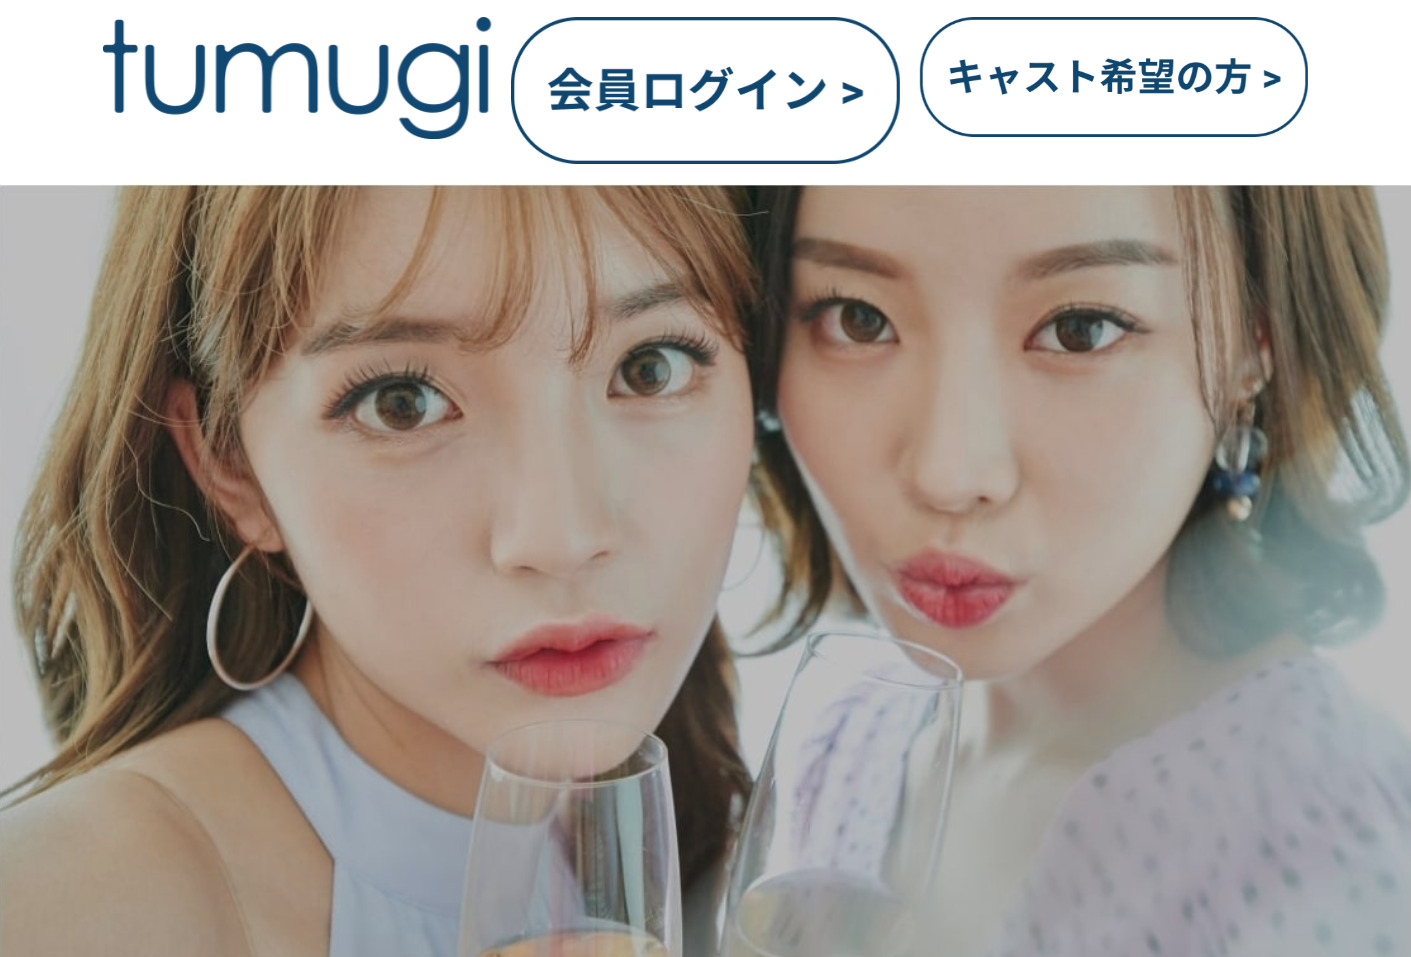 おすすめギャラ飲みアプリ「tumugi(ツムギ)」